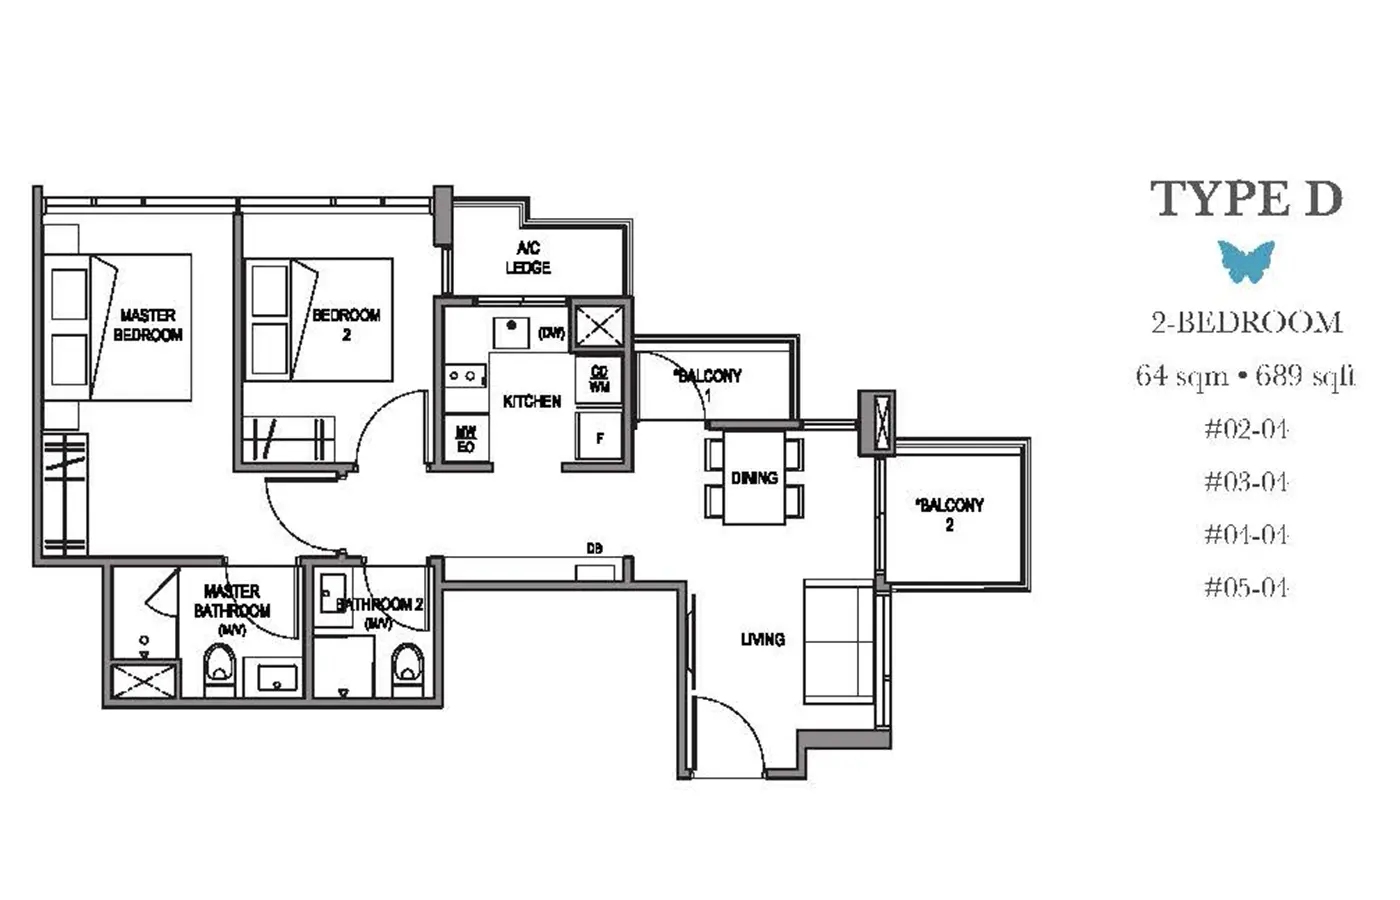 La Mariposa Condo Floor Plan - 2 Bedroom D